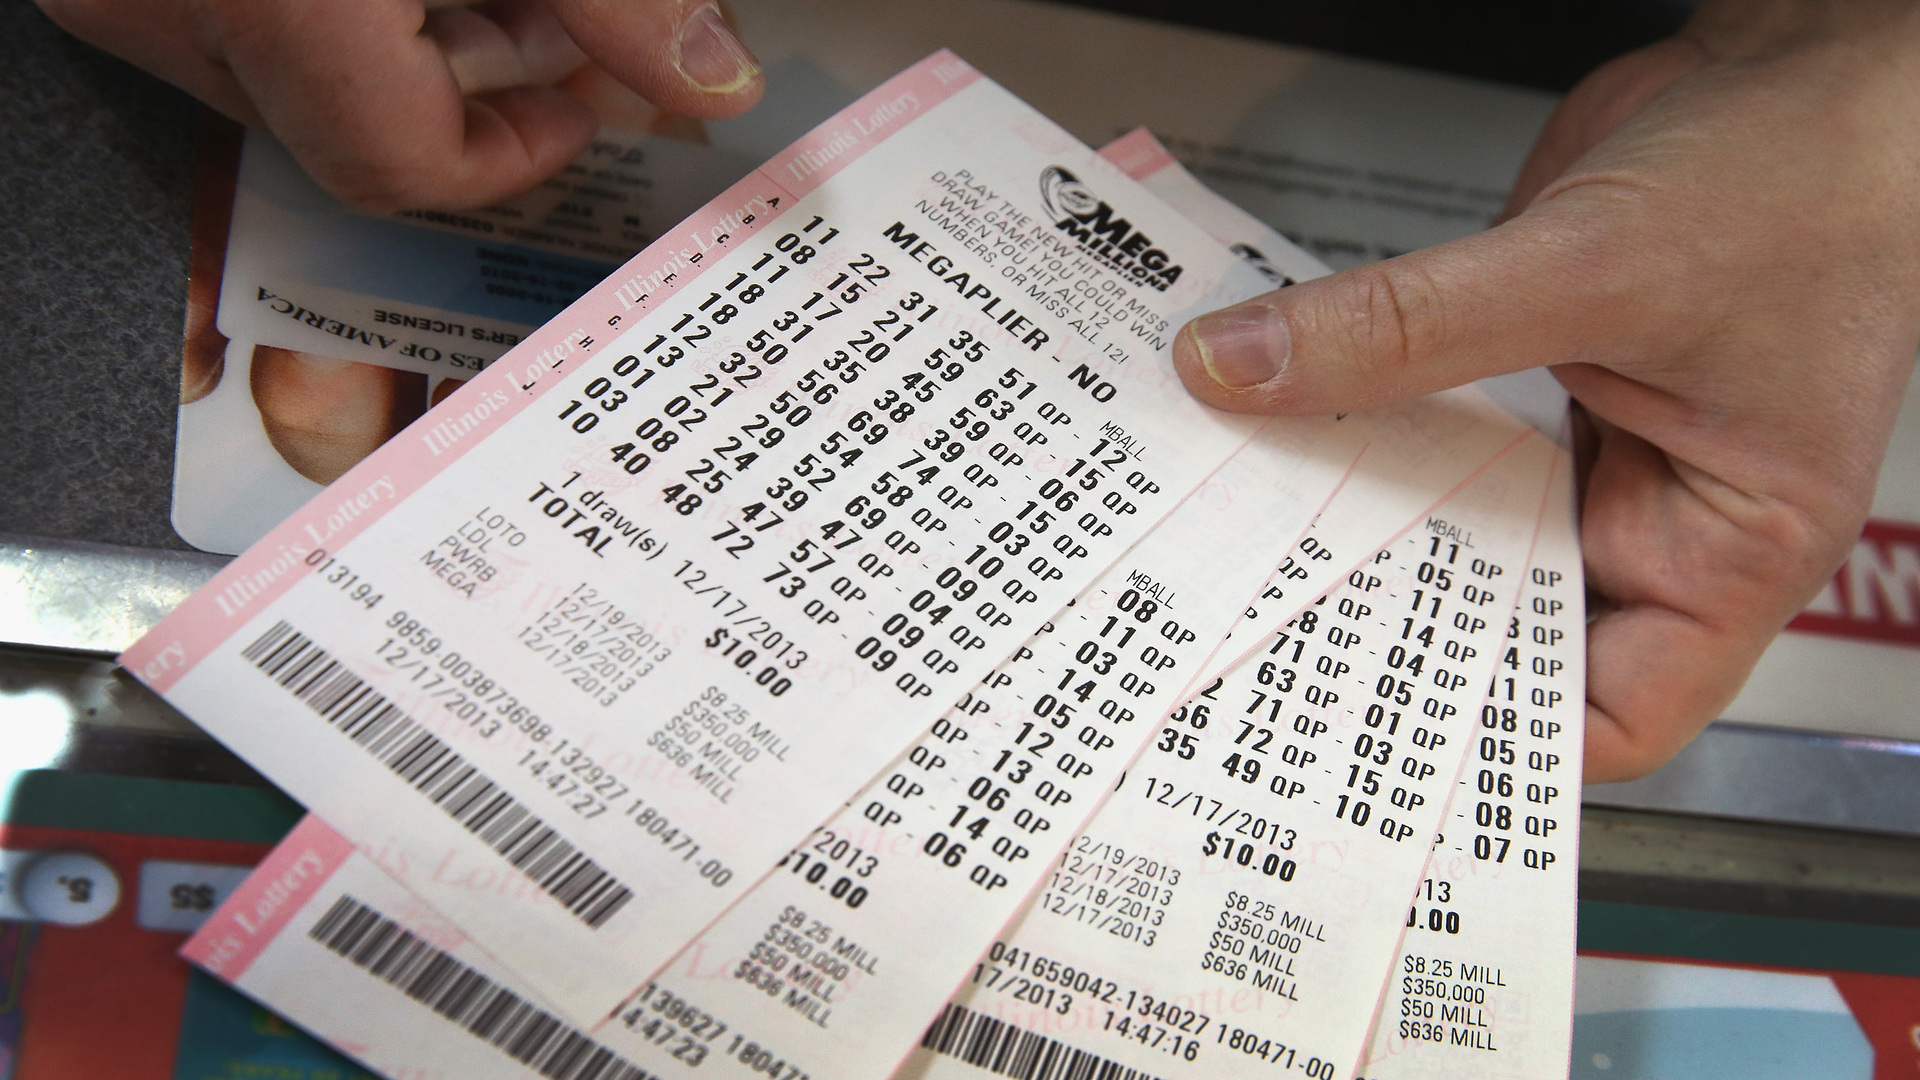 A Mega Millions é uma das maiores loterias do mundo e quando ela acumula os prêmios chegam a cifras bilionárias